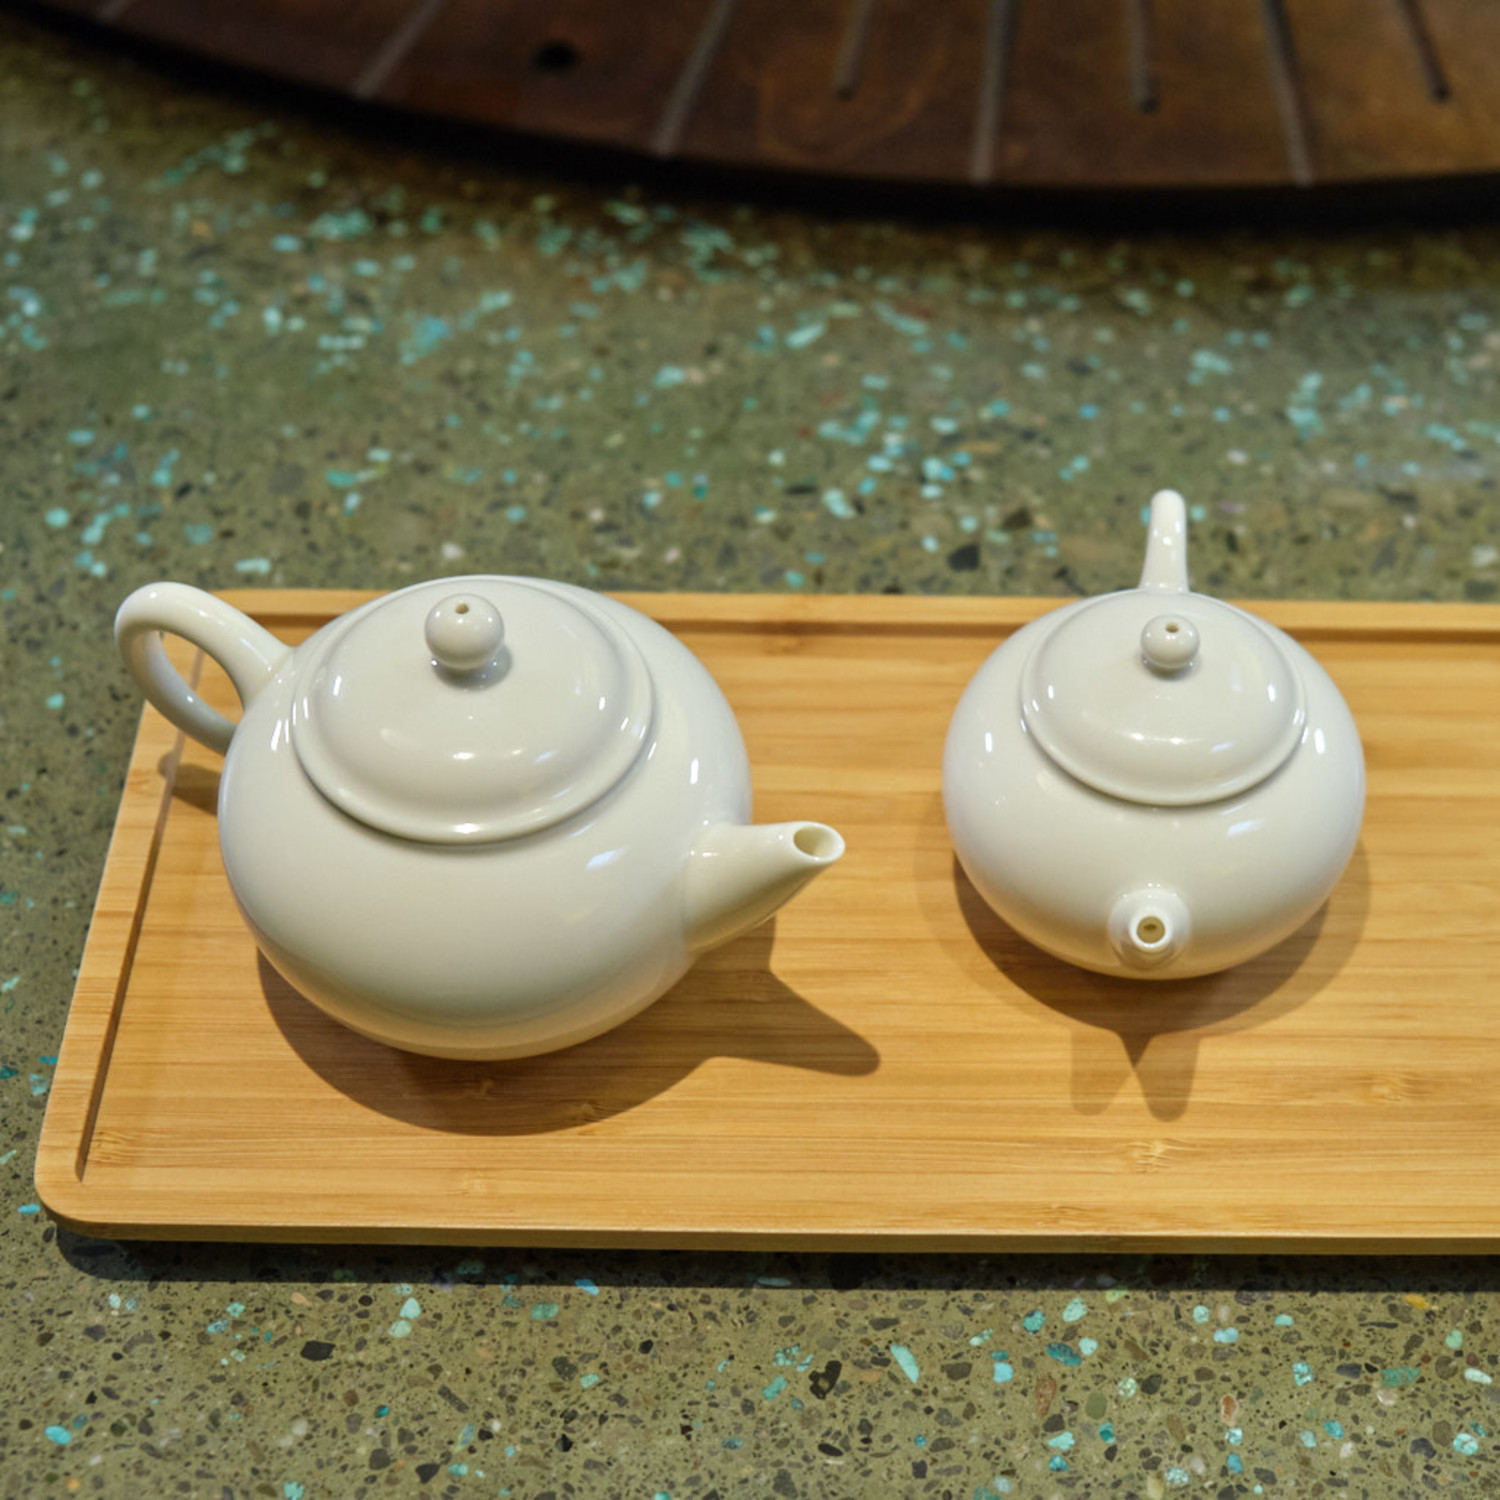 https://cdn.shoplightspeed.com/shops/631961/files/40001249/1500x4000x3/yingge-taiwan-porcelain-teapot-classic-style.jpg